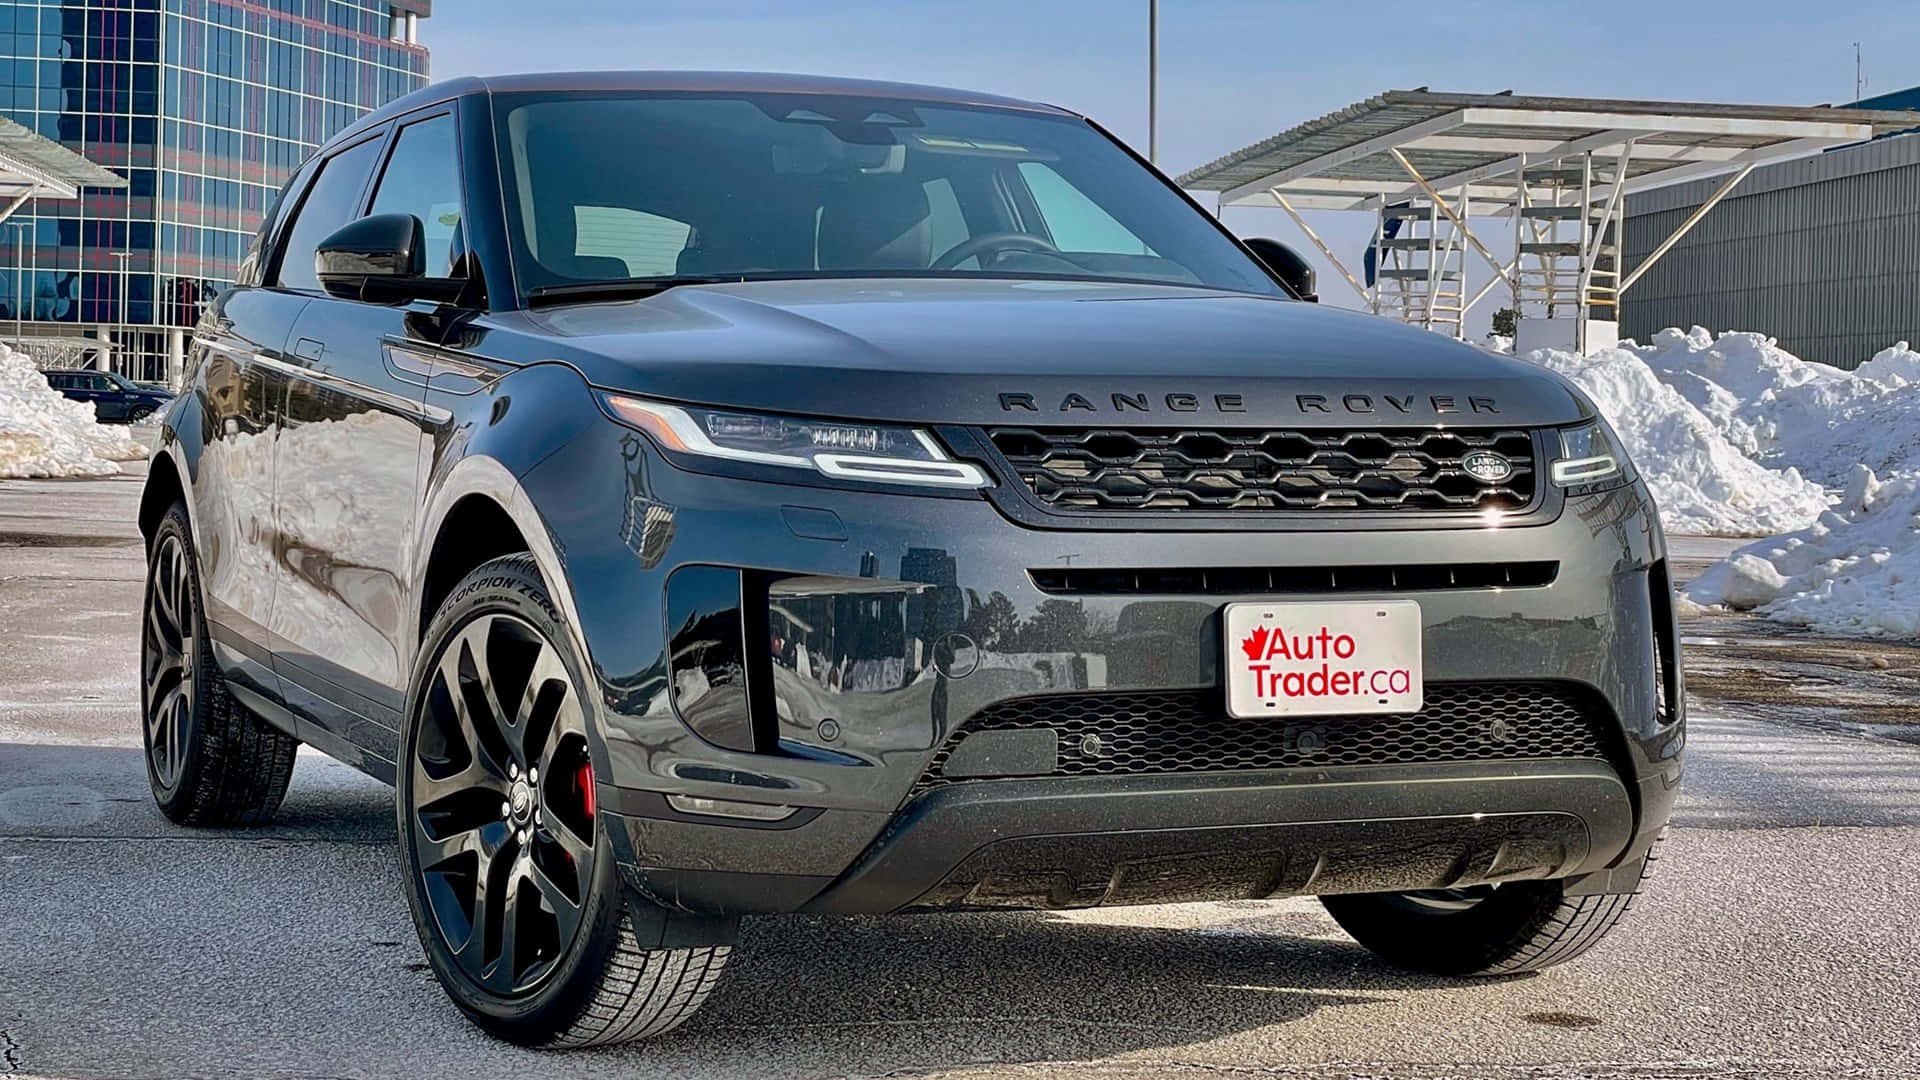 Larange Rover Evoque 2019 È Parcheggiata Davanti A Un Edificio.